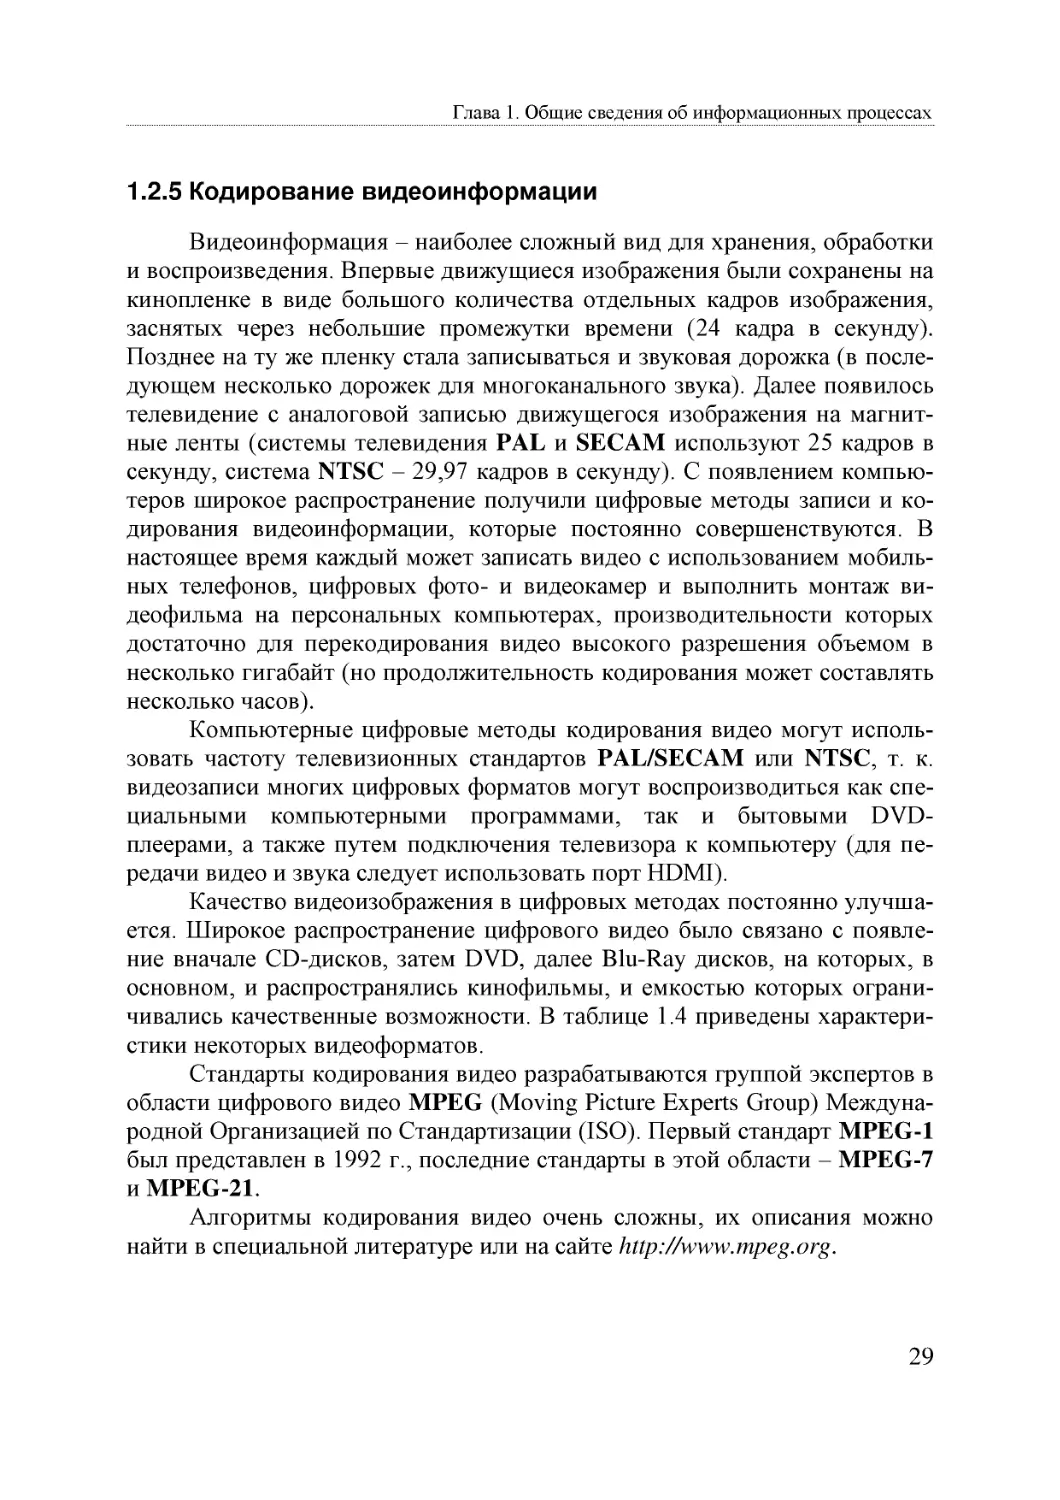 Informatika_Uchebnik_dlya_vuzov_2010 29